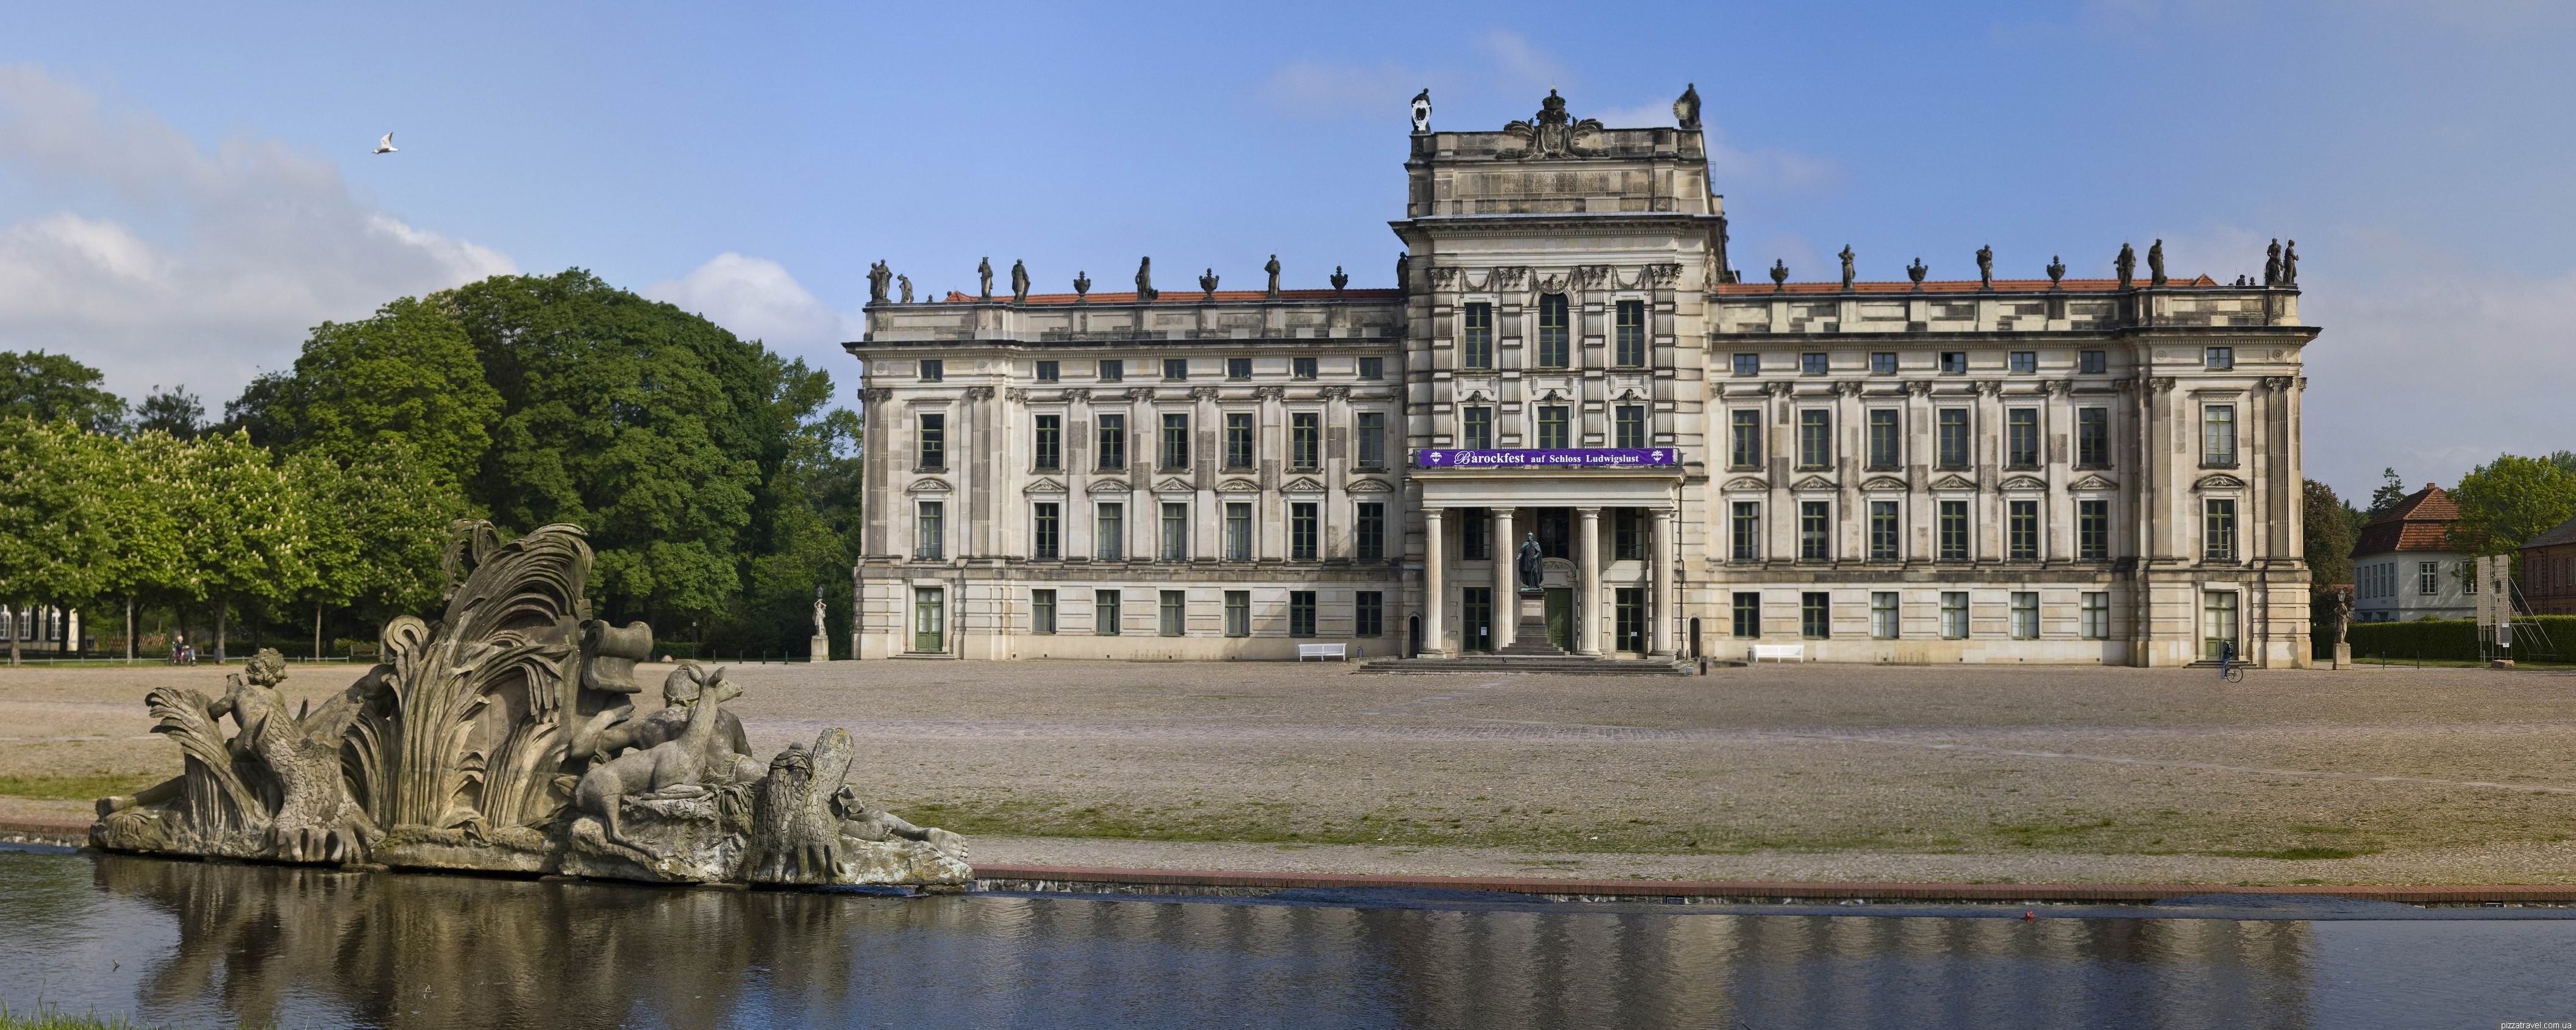 Ludwigslust Palace #10